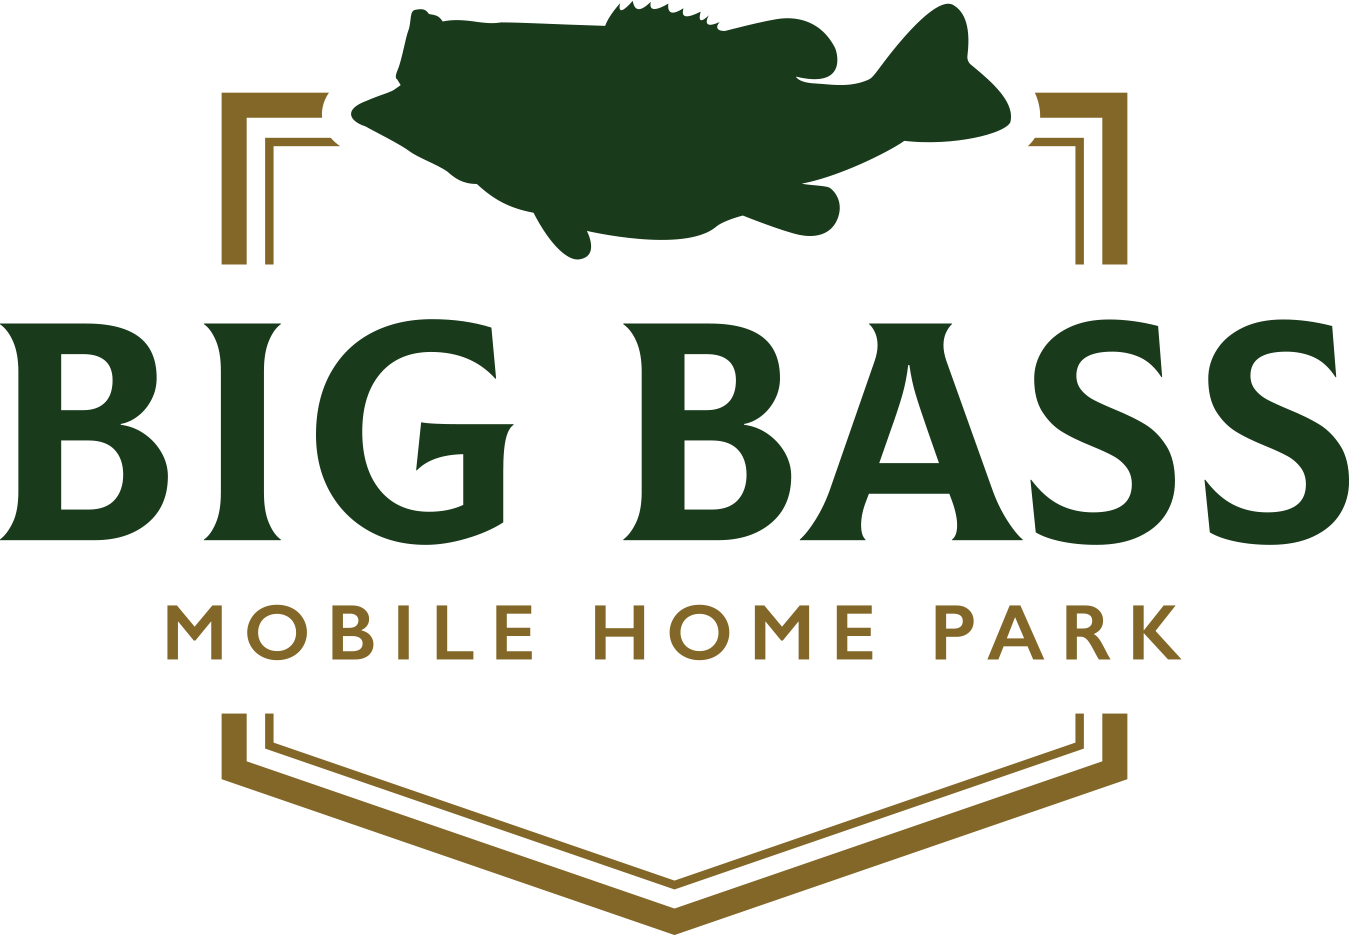 Big Bass Mobile Home Park